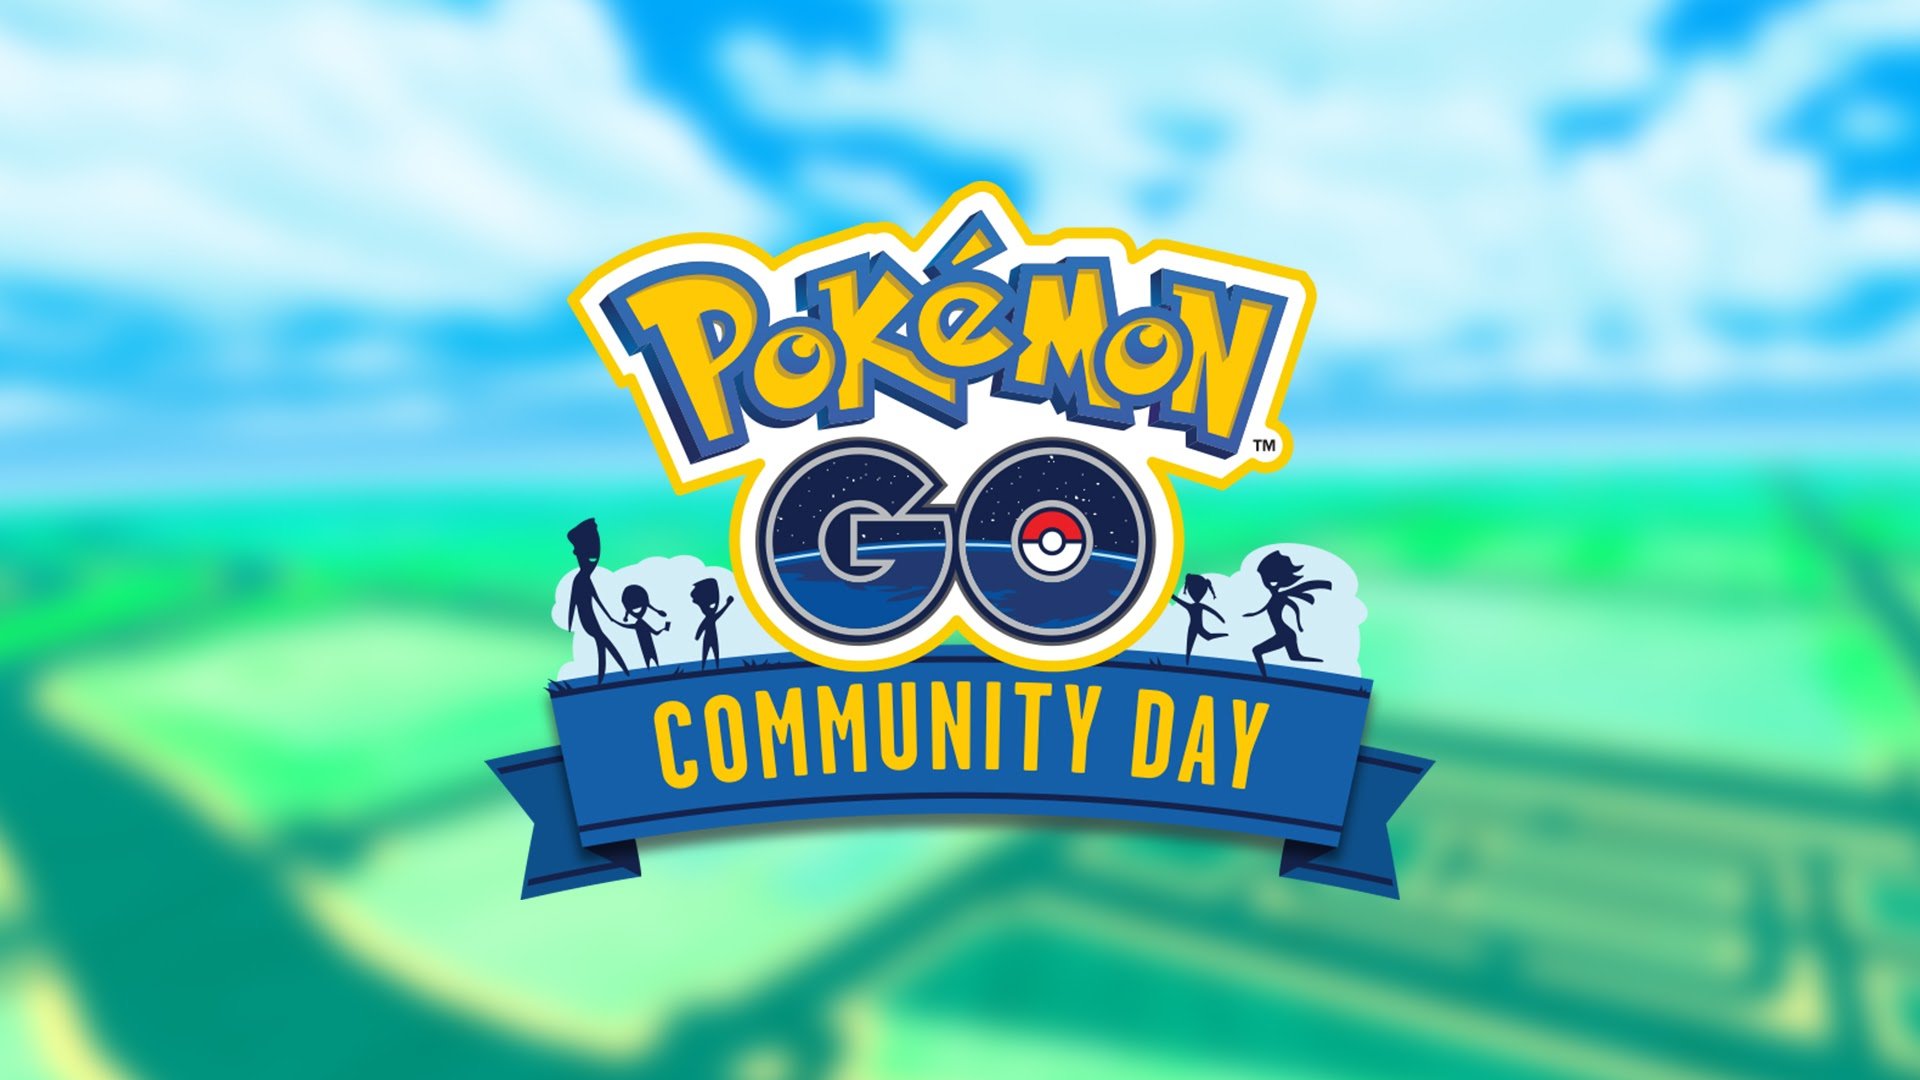 Pokémon Go Abra Community Day: How To Get A Shiny, Powerful